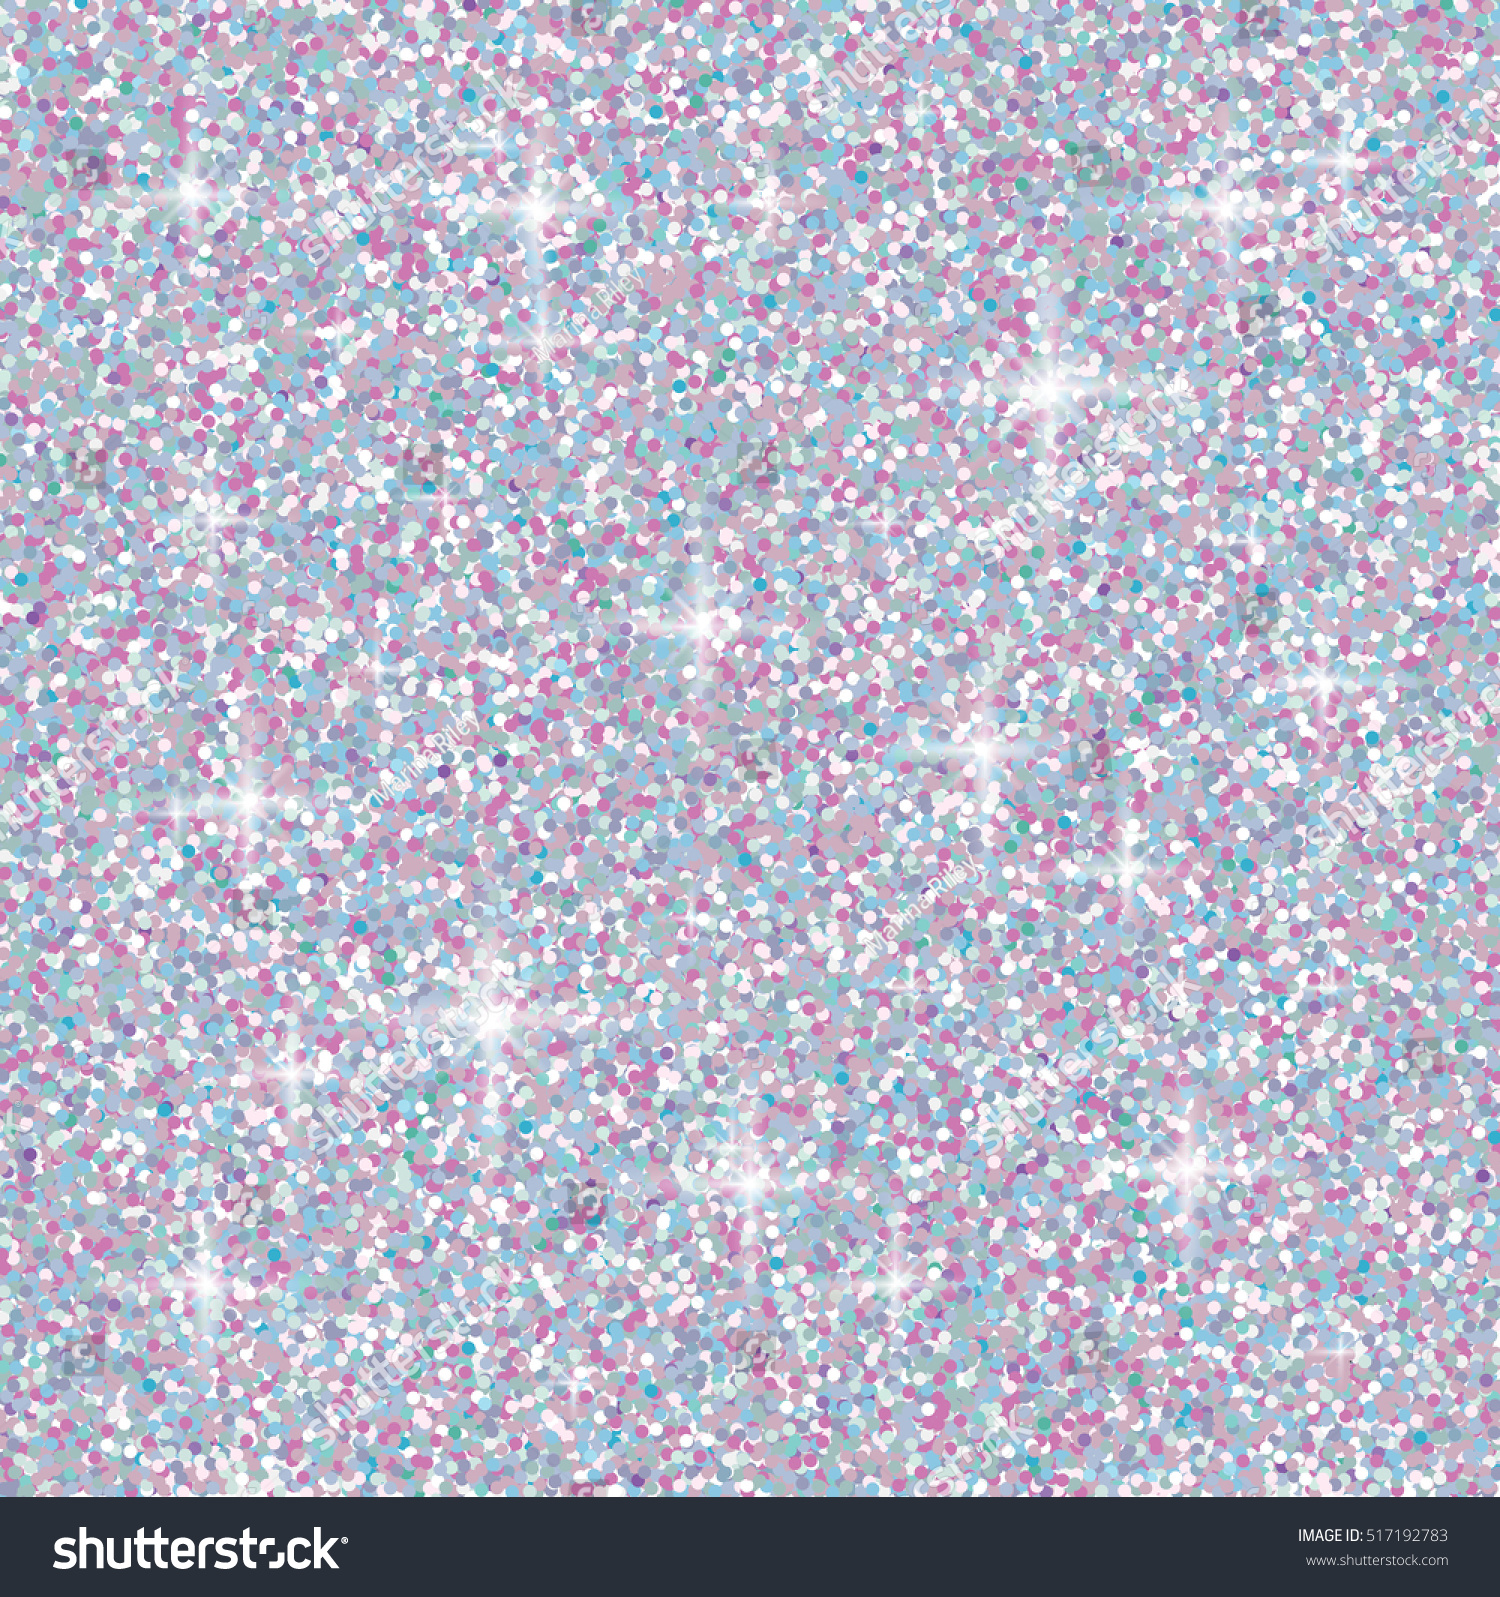 Iridescent Glitter Wallpaper